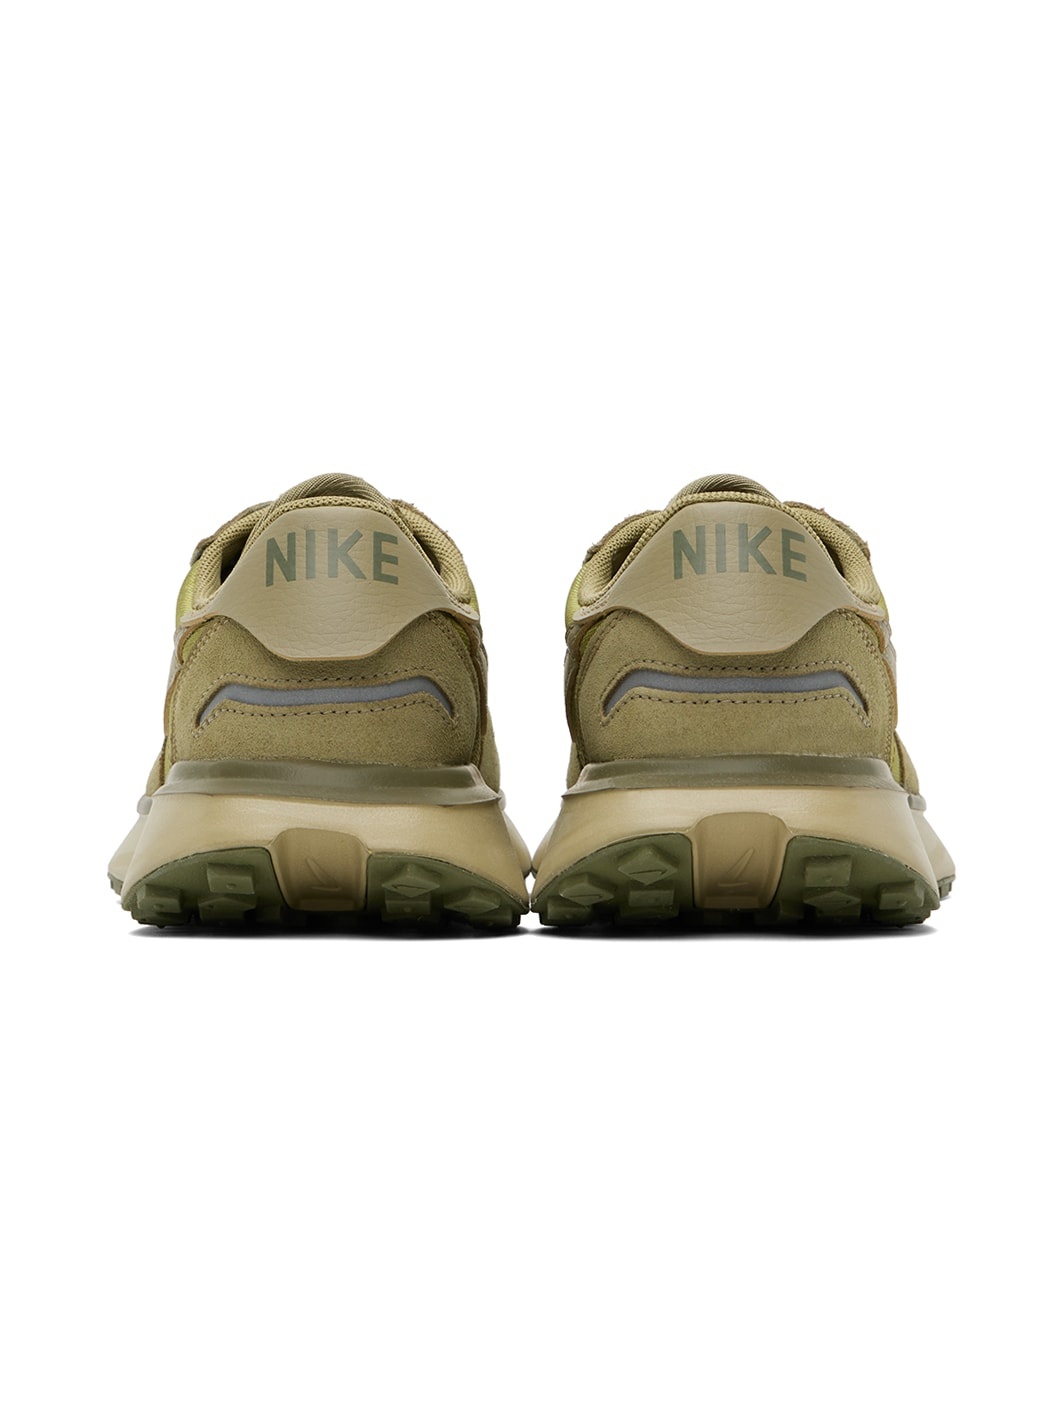 Green Nike Phoenix Waffle Sneakers - 2